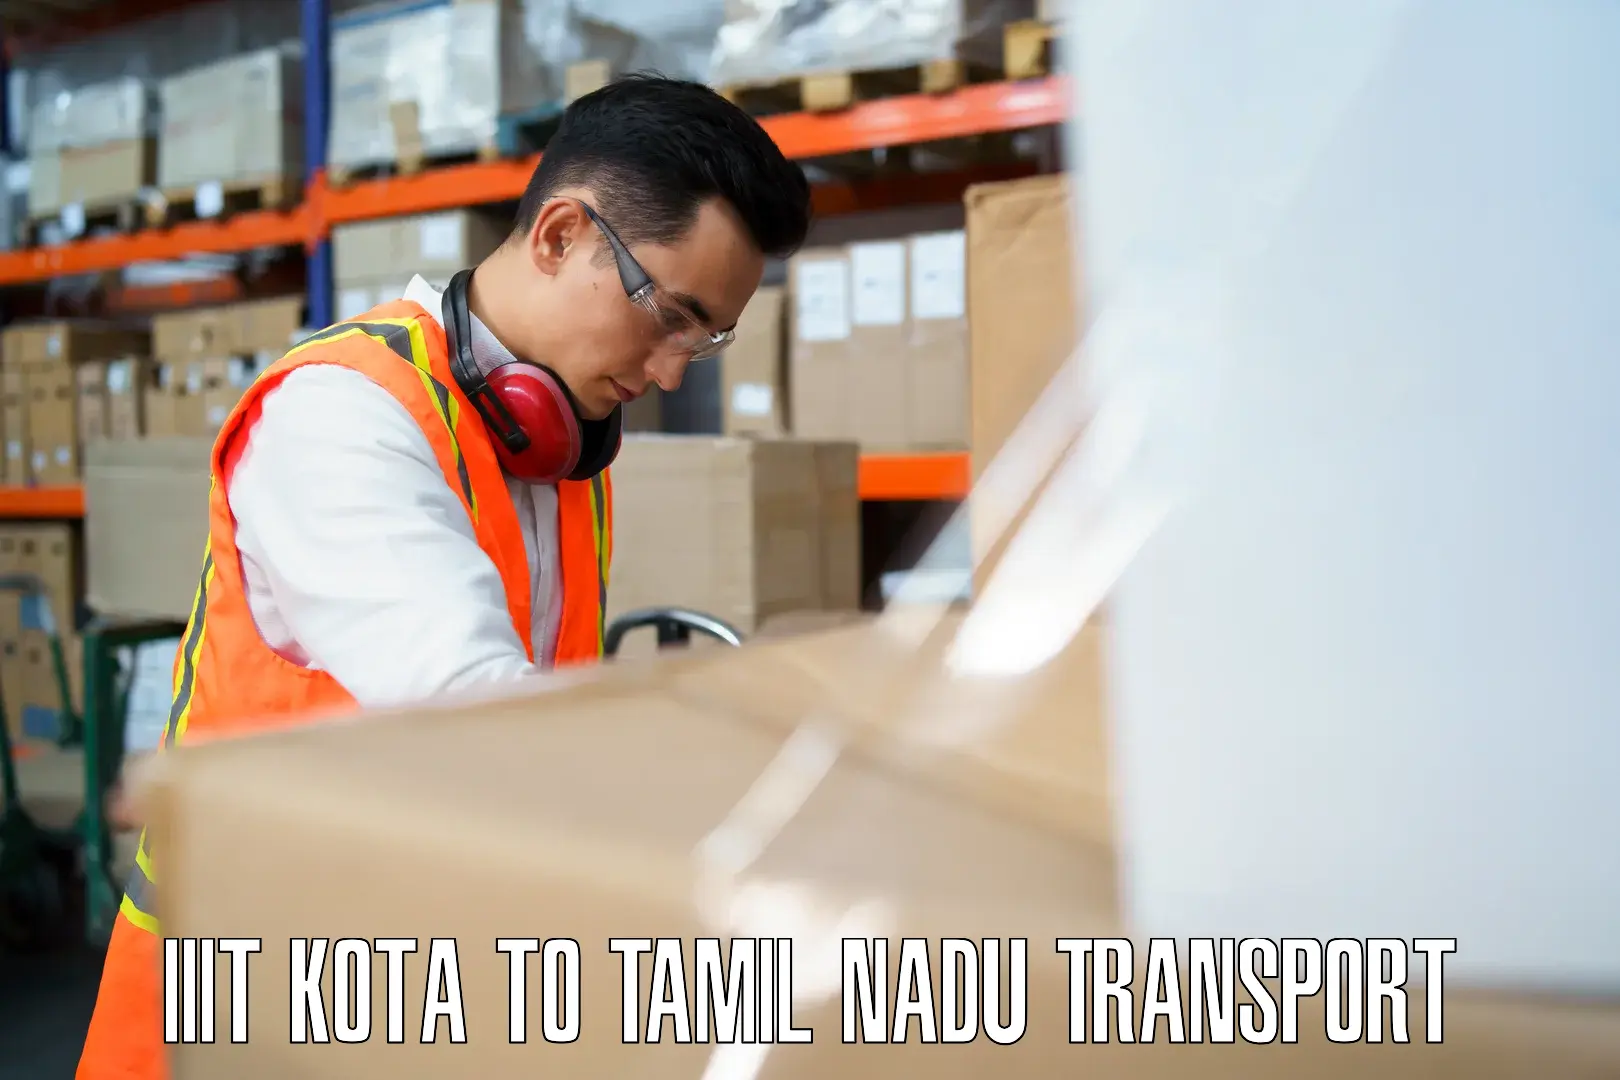 Interstate transport services IIIT Kota to Pudukkottai